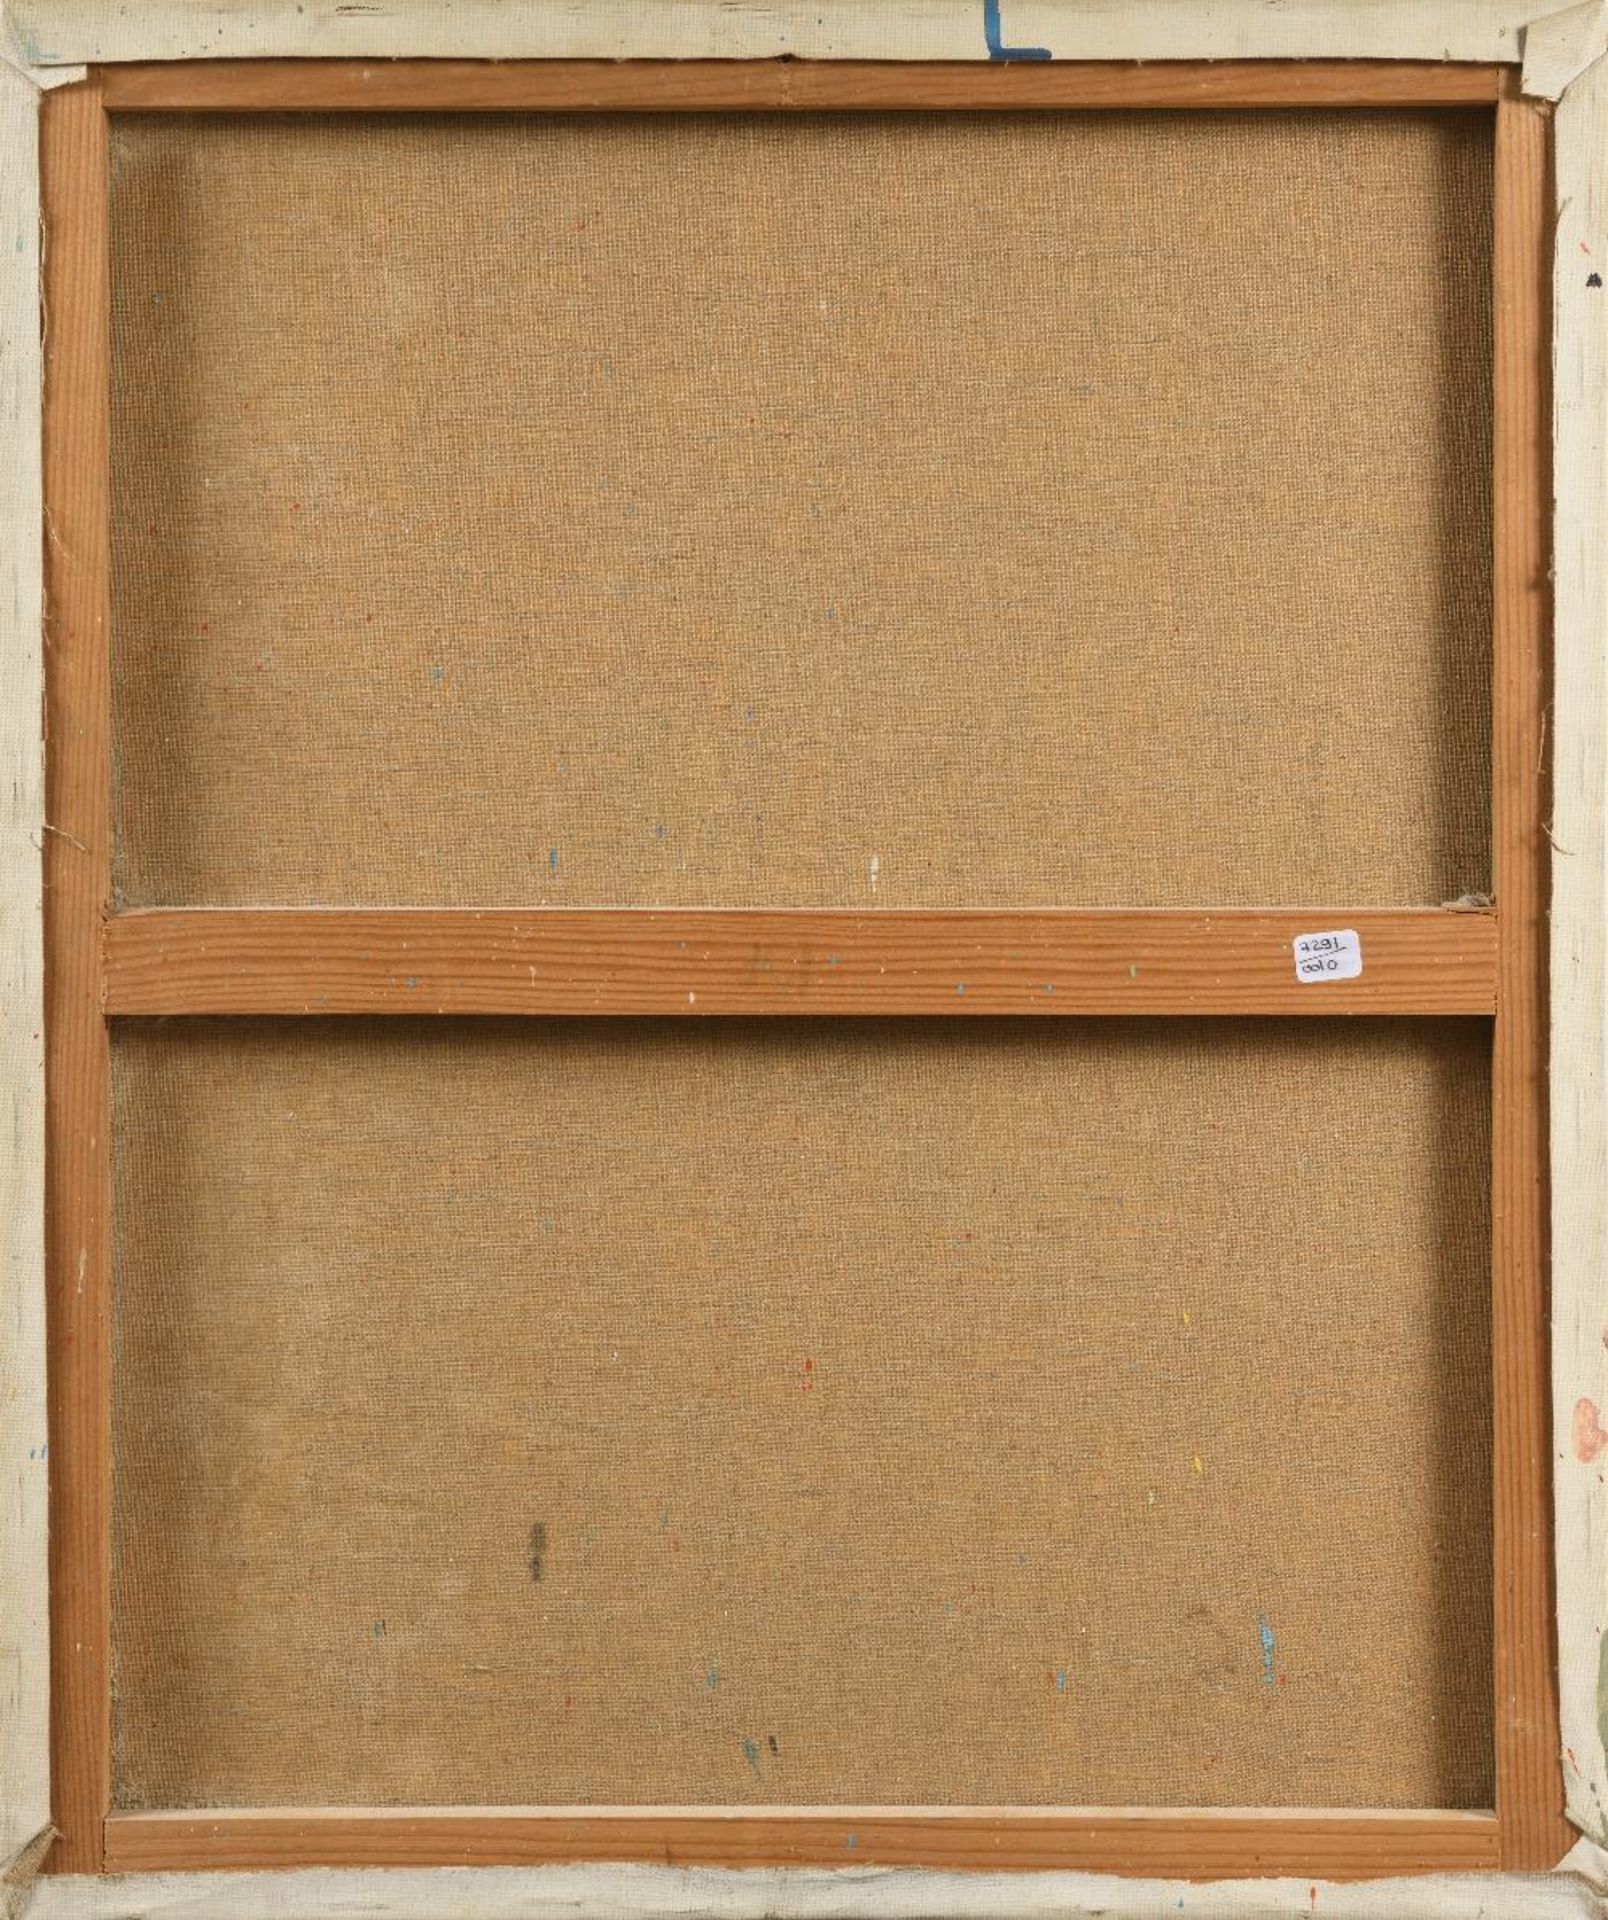 Fériel LAKHDAR (Tunis 1965)Atelier d'artisteHuile sur toile 64,5x54 cm Signé et daté en bas à droite - Image 2 of 2